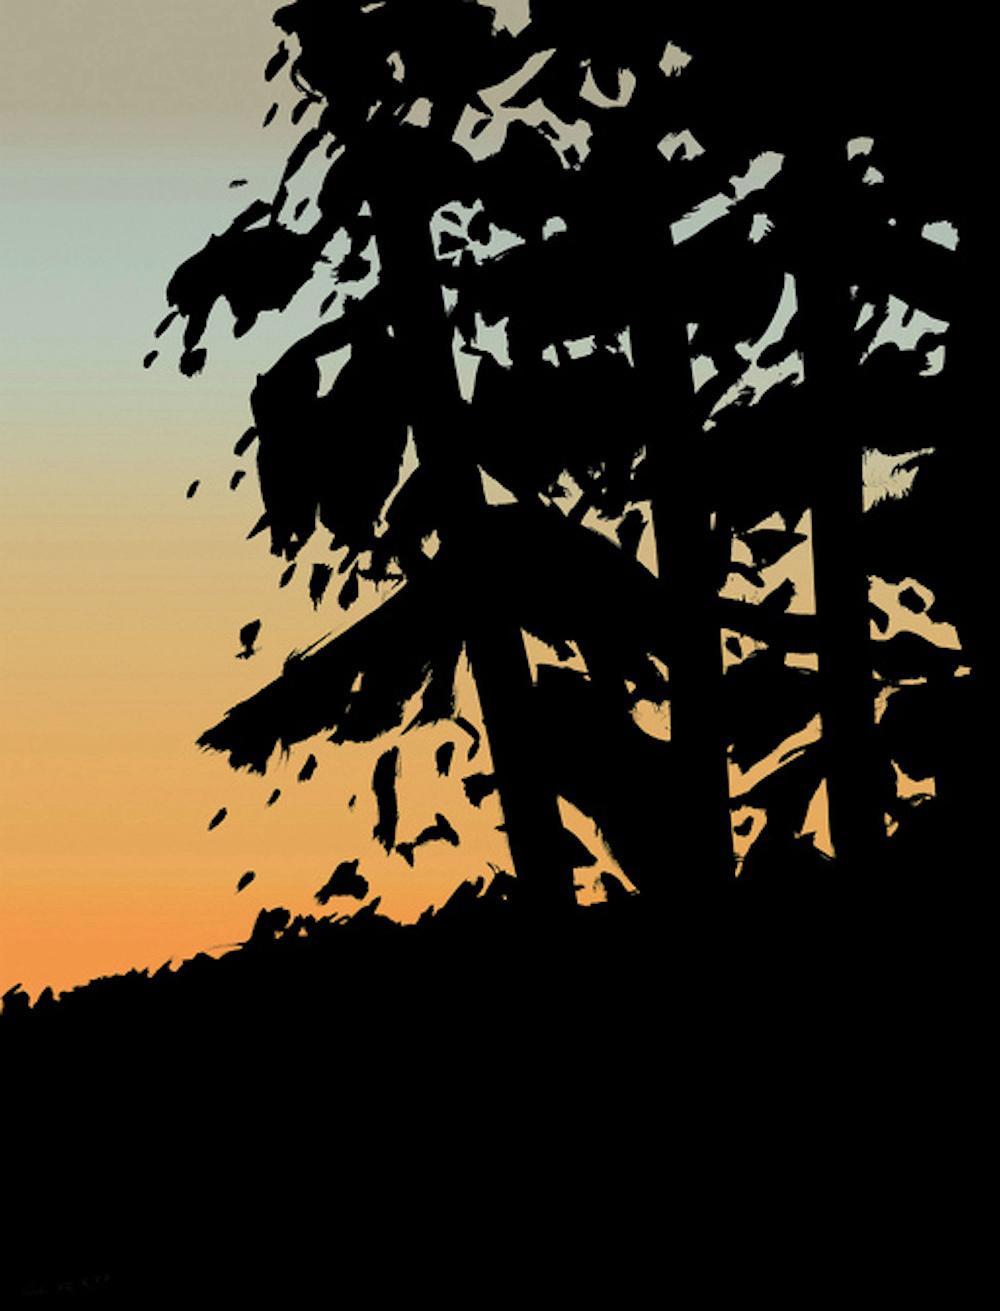 Sunset 1, from Sunrise Sunset Portfolio